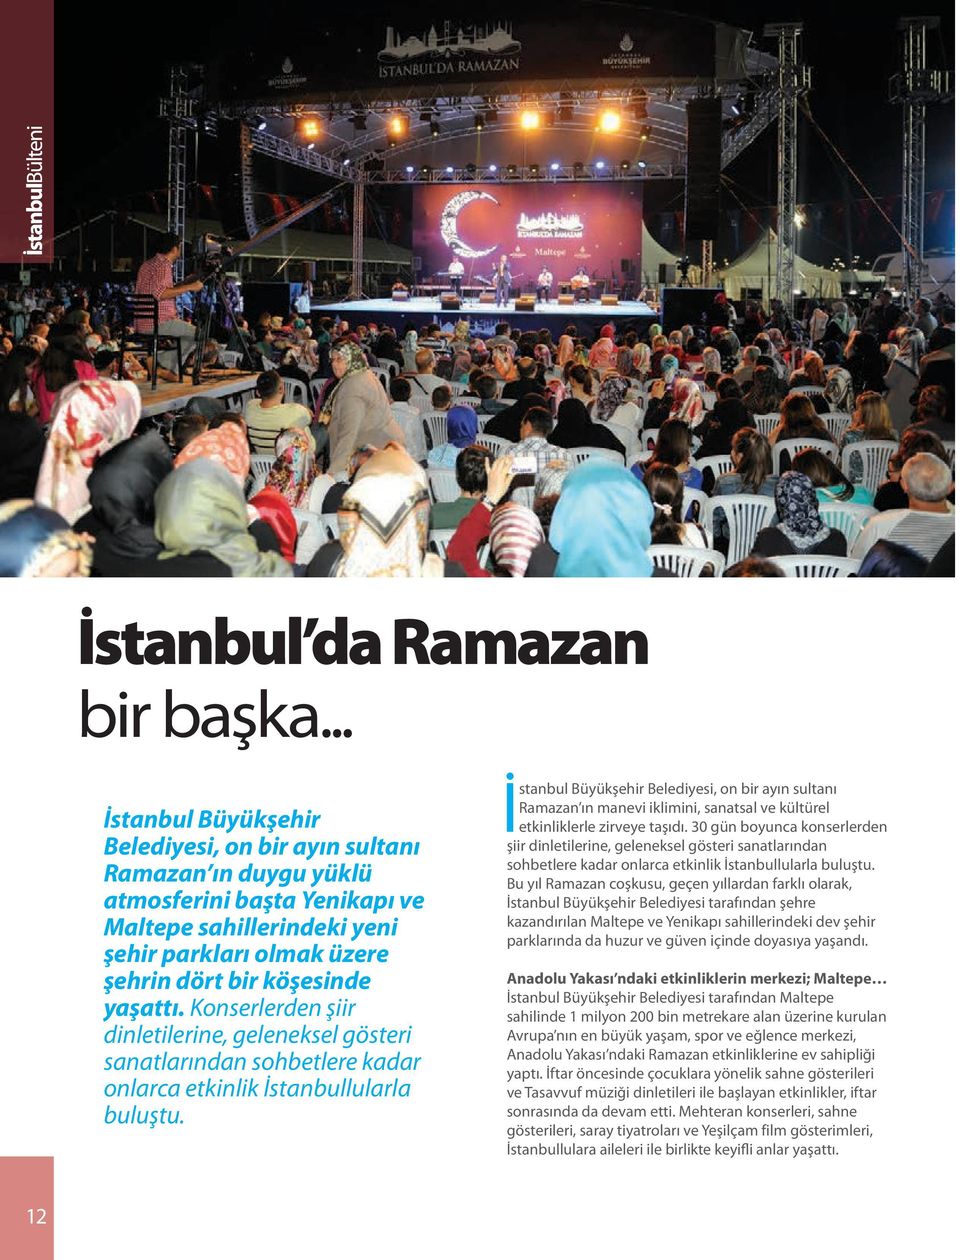 Konserlerden şiir dinletilerine, geleneksel gösteri sanatlarından sohbetlere kadar onlarca etkinlik İstanbullularla buluştu.